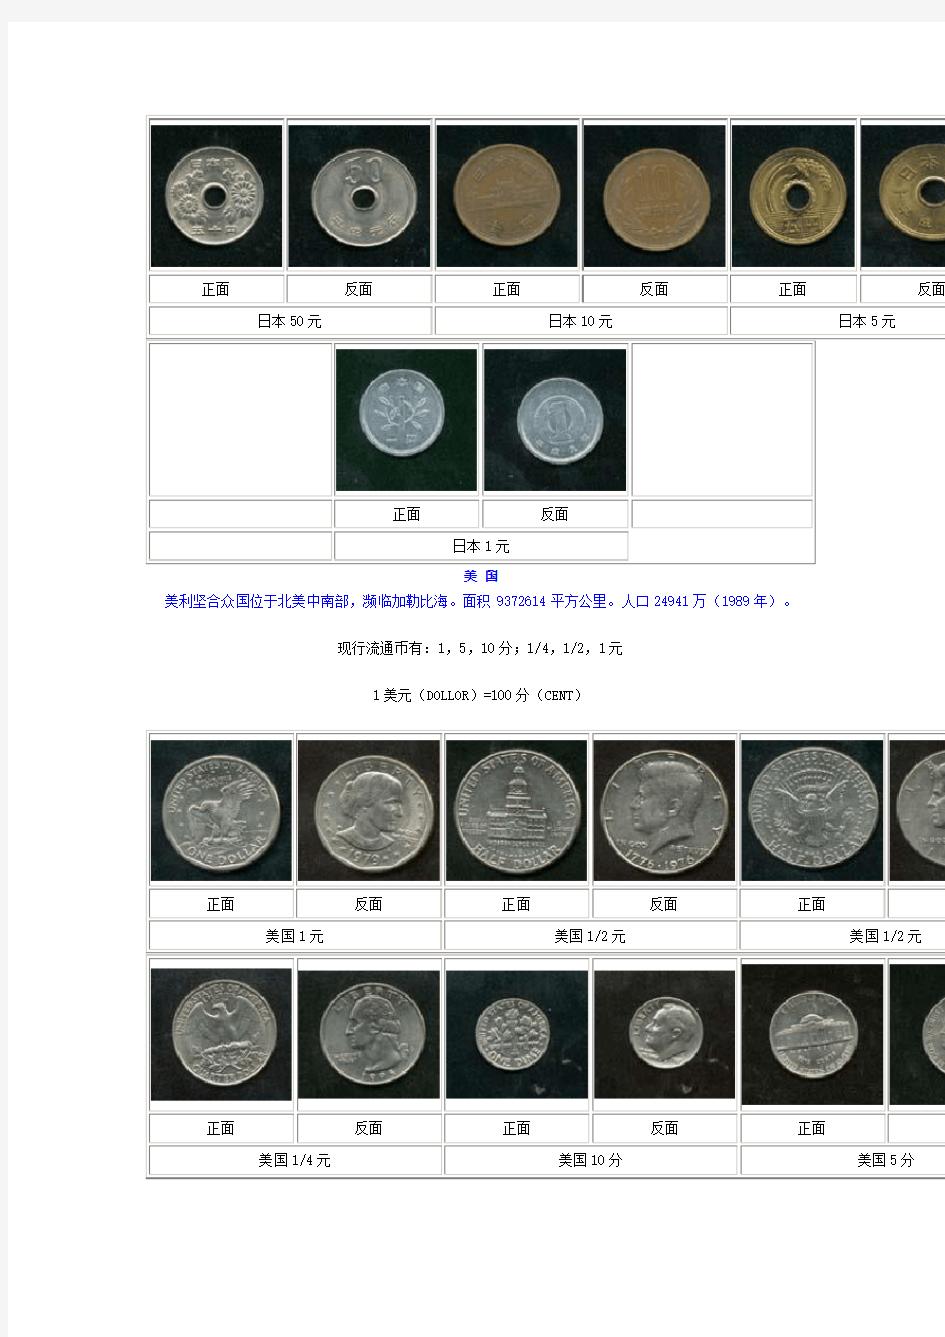 世界各国的货币和硬币名称及图片